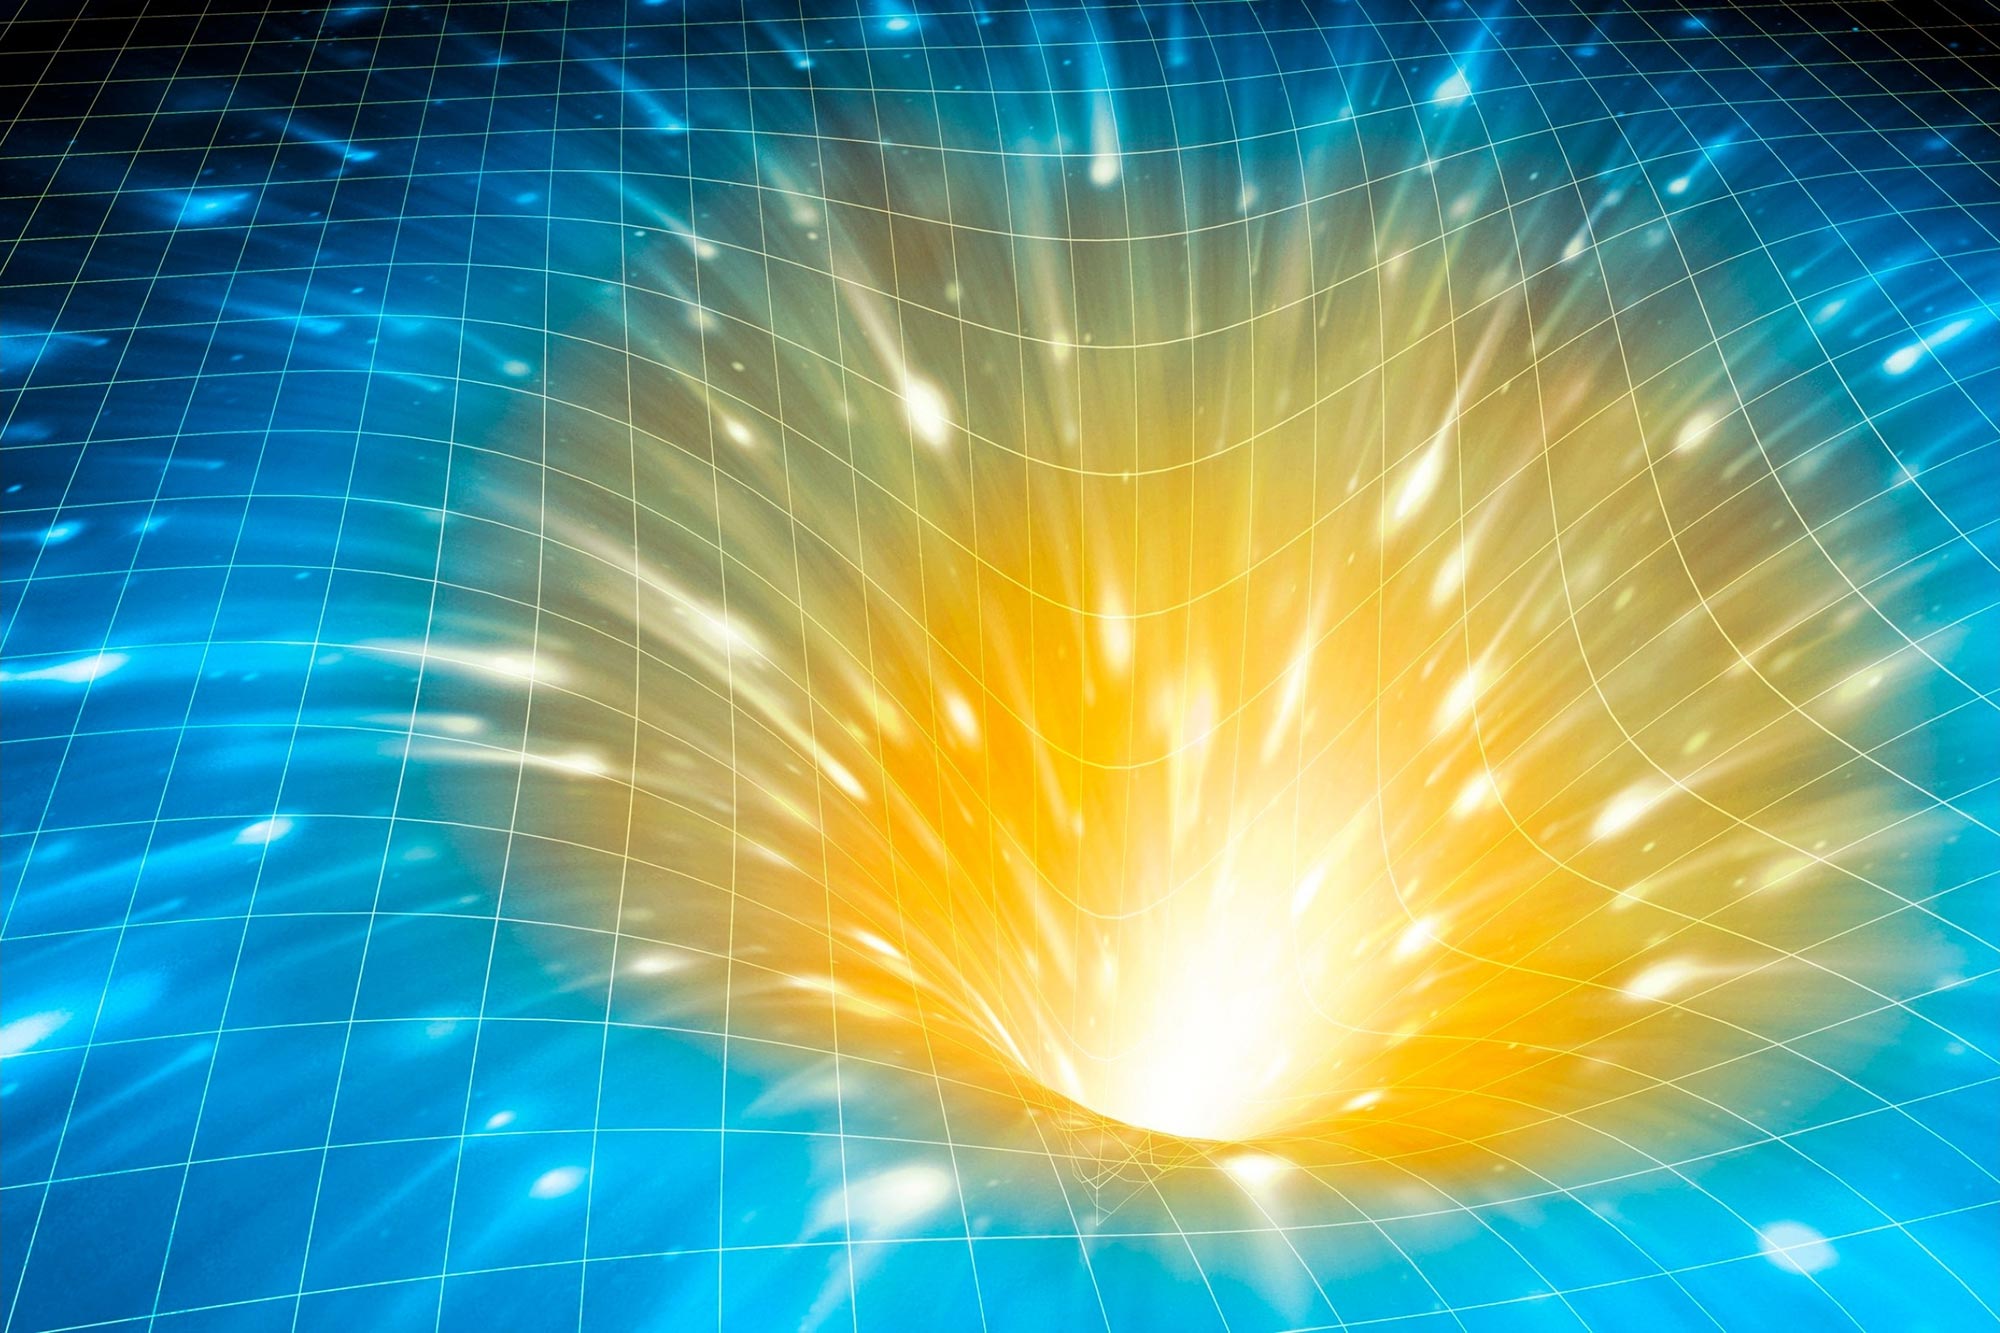 La “magia” quantistica e il caos dei buchi neri potrebbero aiutare a spiegare l’origine dello spazio-tempo